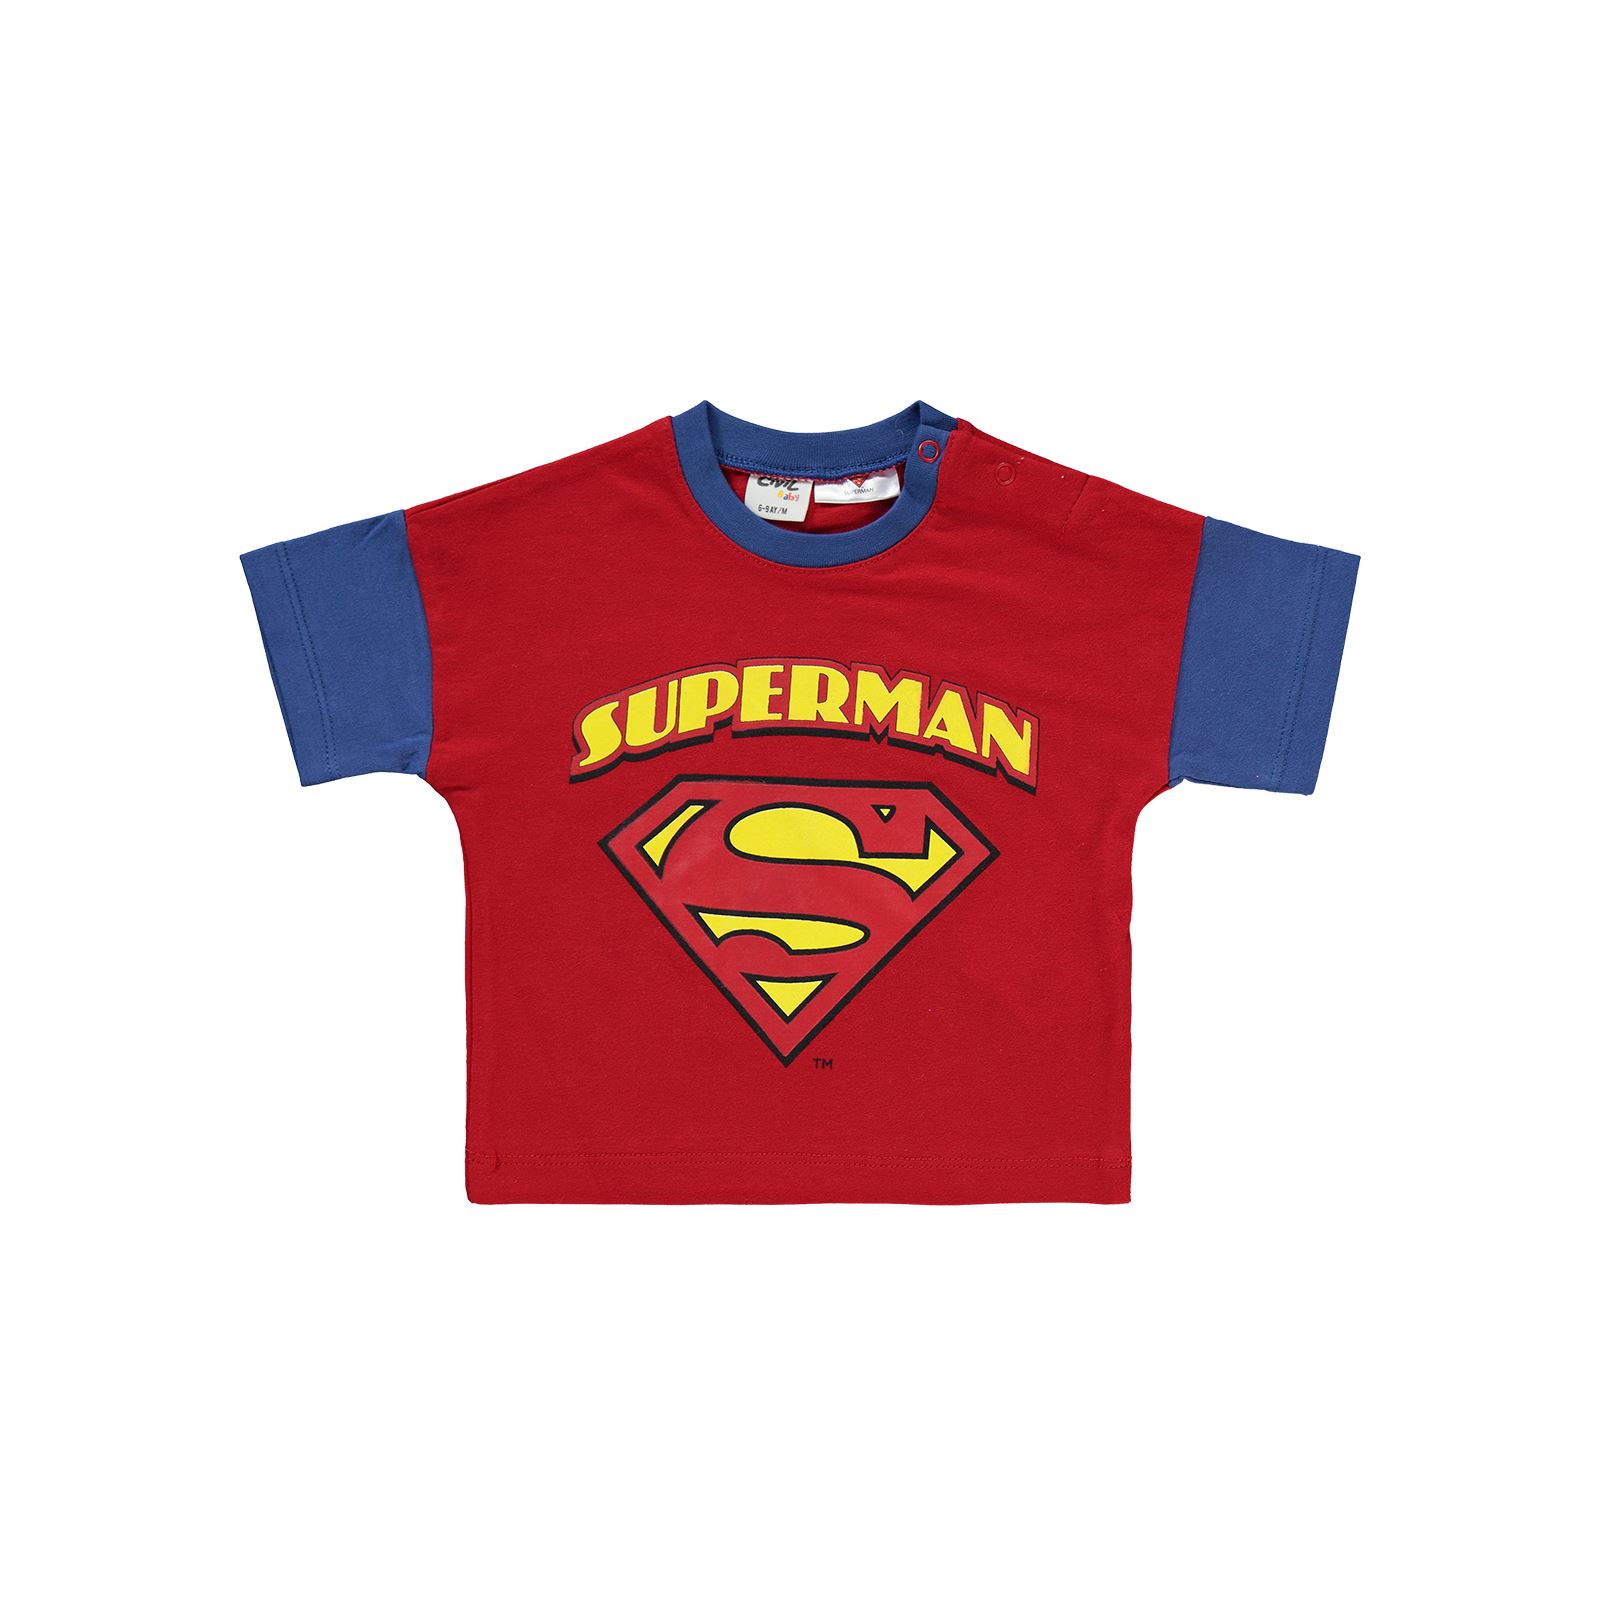 Süperman Erkek Bebek Takım 6-18 Ay Kırmızı